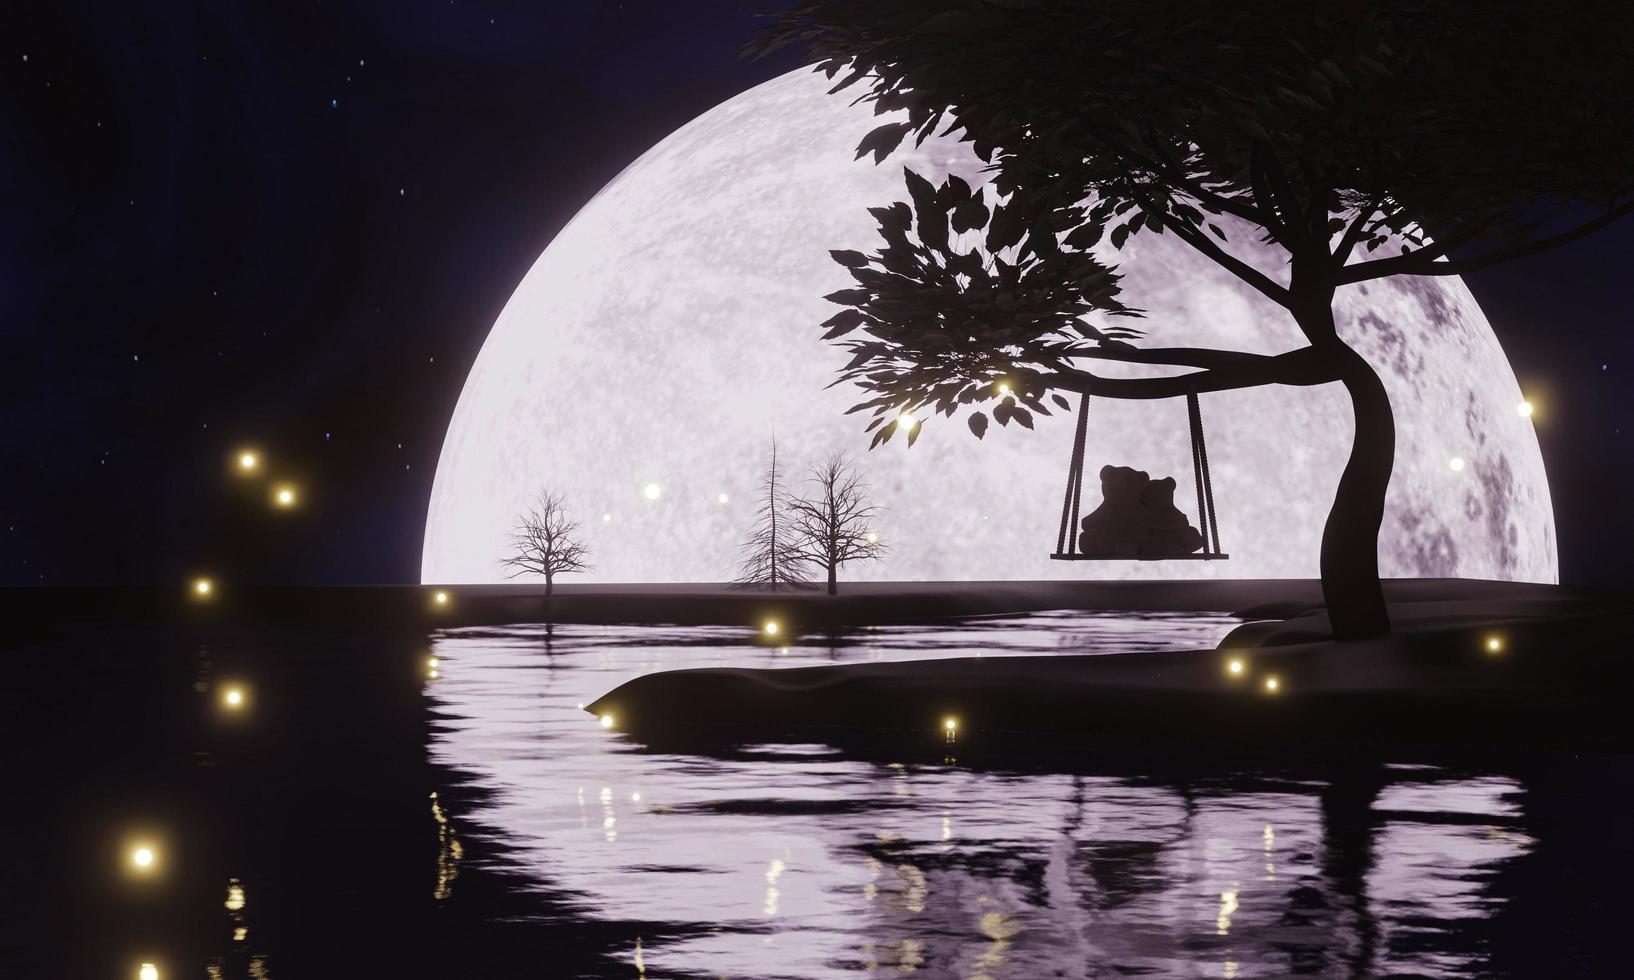 noche de luna llena, pero solo se puede ver la mitad de la luna. el reflejo de la luna en el río por la noche. la silueta del árbol tiene la escena principal de la luna. cielo despejado, renderizado sky.3d estrellado foto